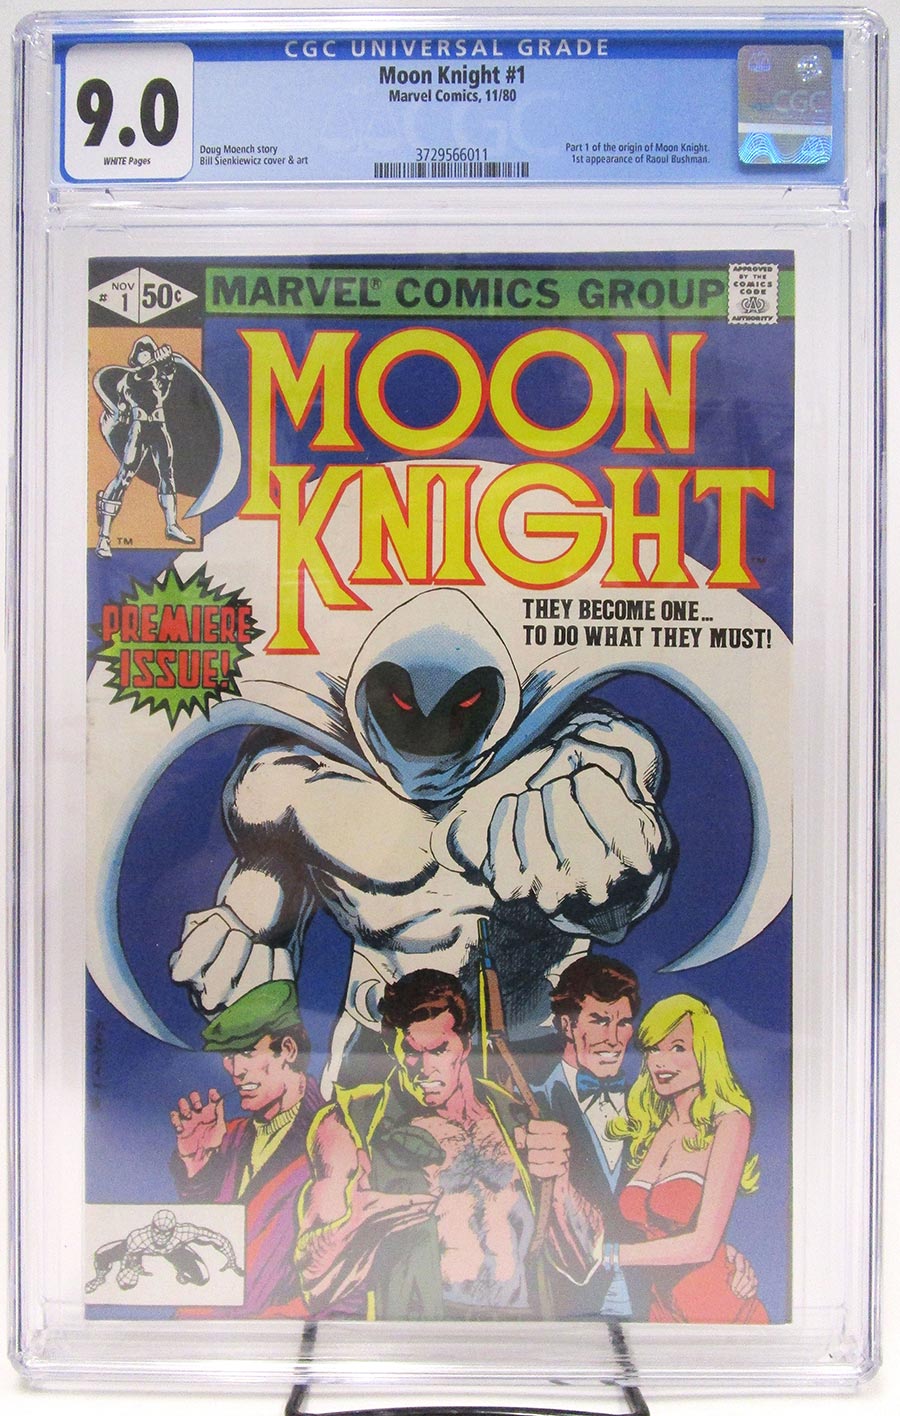 Moon Knight Vol 1 #1 Cover E CGC 9.0